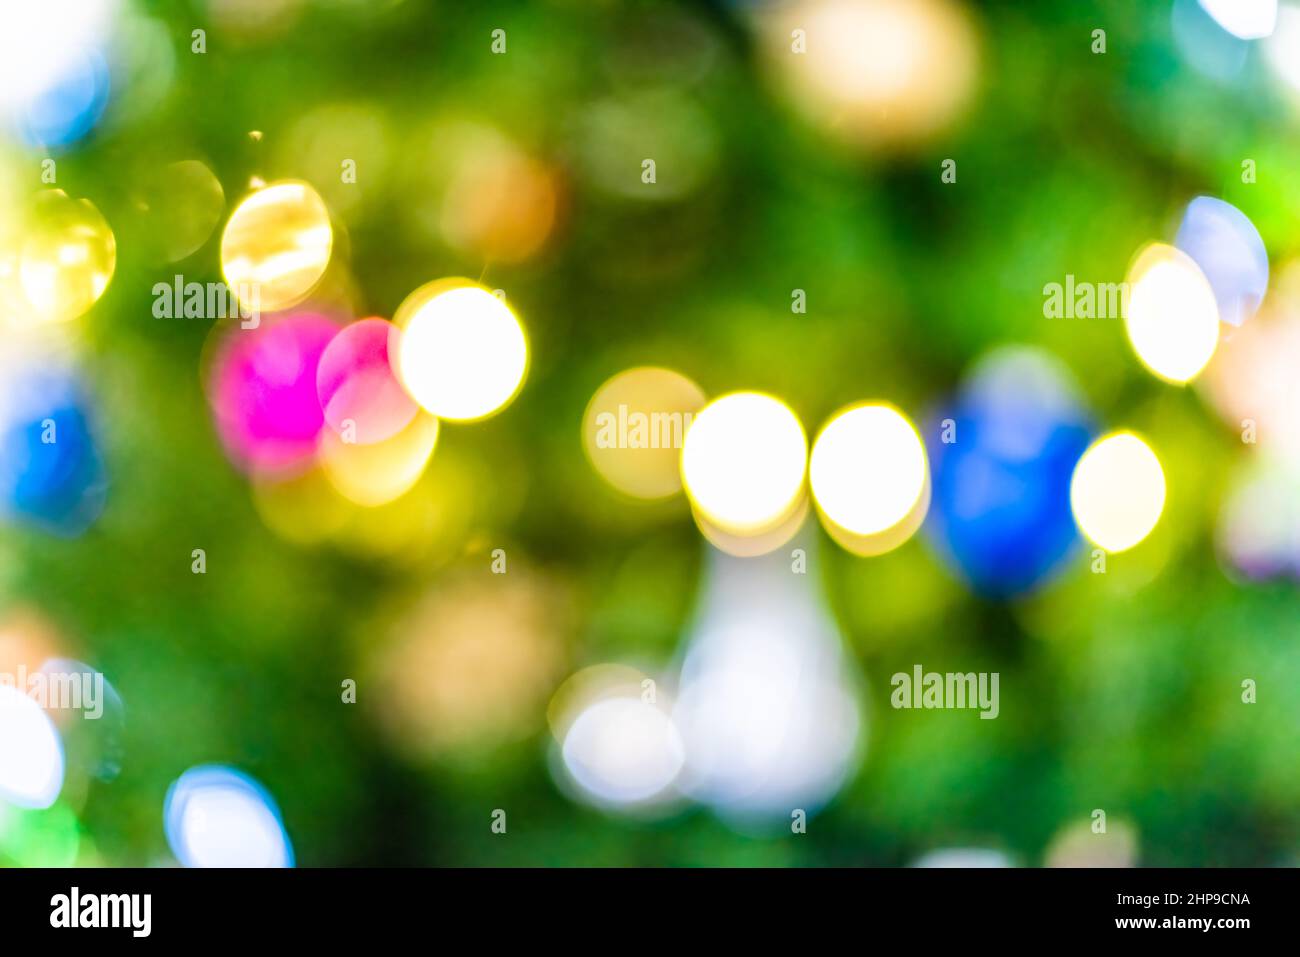 Natale albero bokeh sfondo astratto con giallo, blu e verde ornamenti decorazioni festive luci luminose sfocate cerchi sfocati fuori Foto Stock